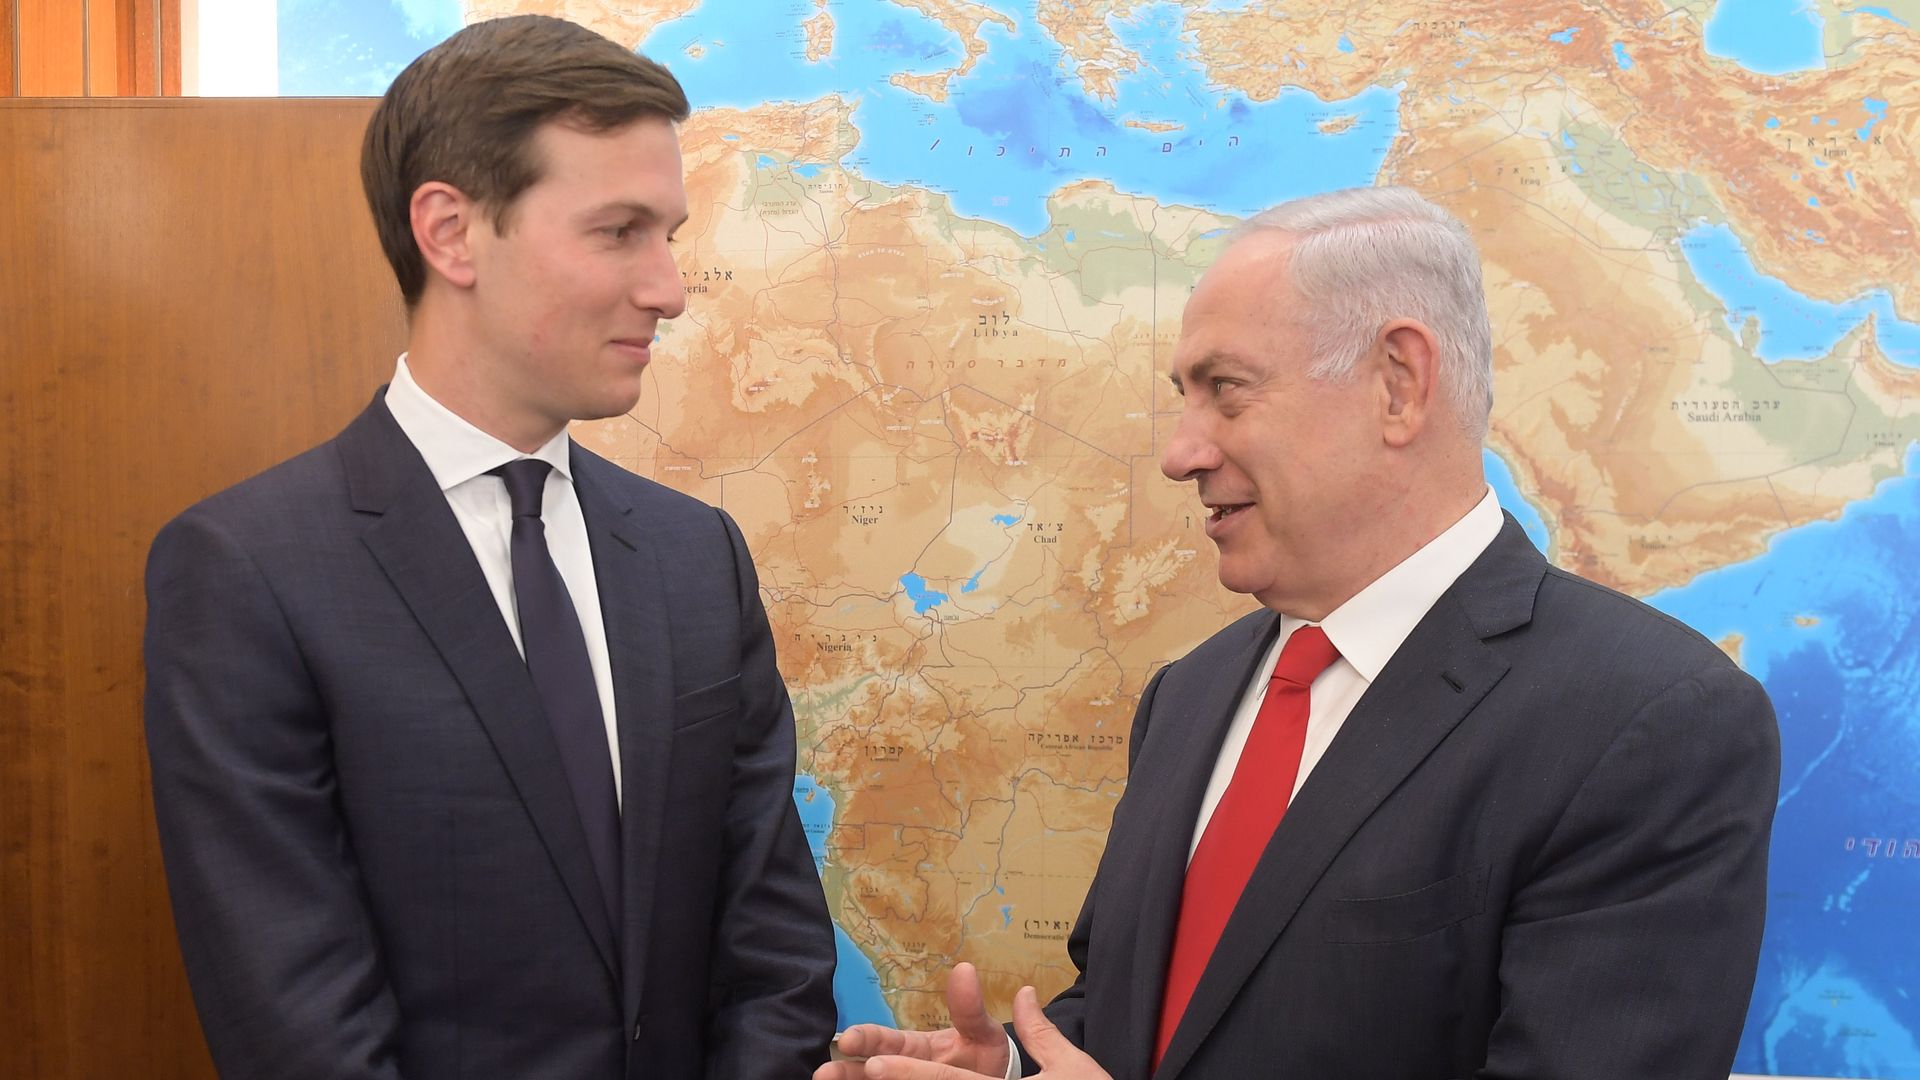 Jared Kushner and Netanyahu